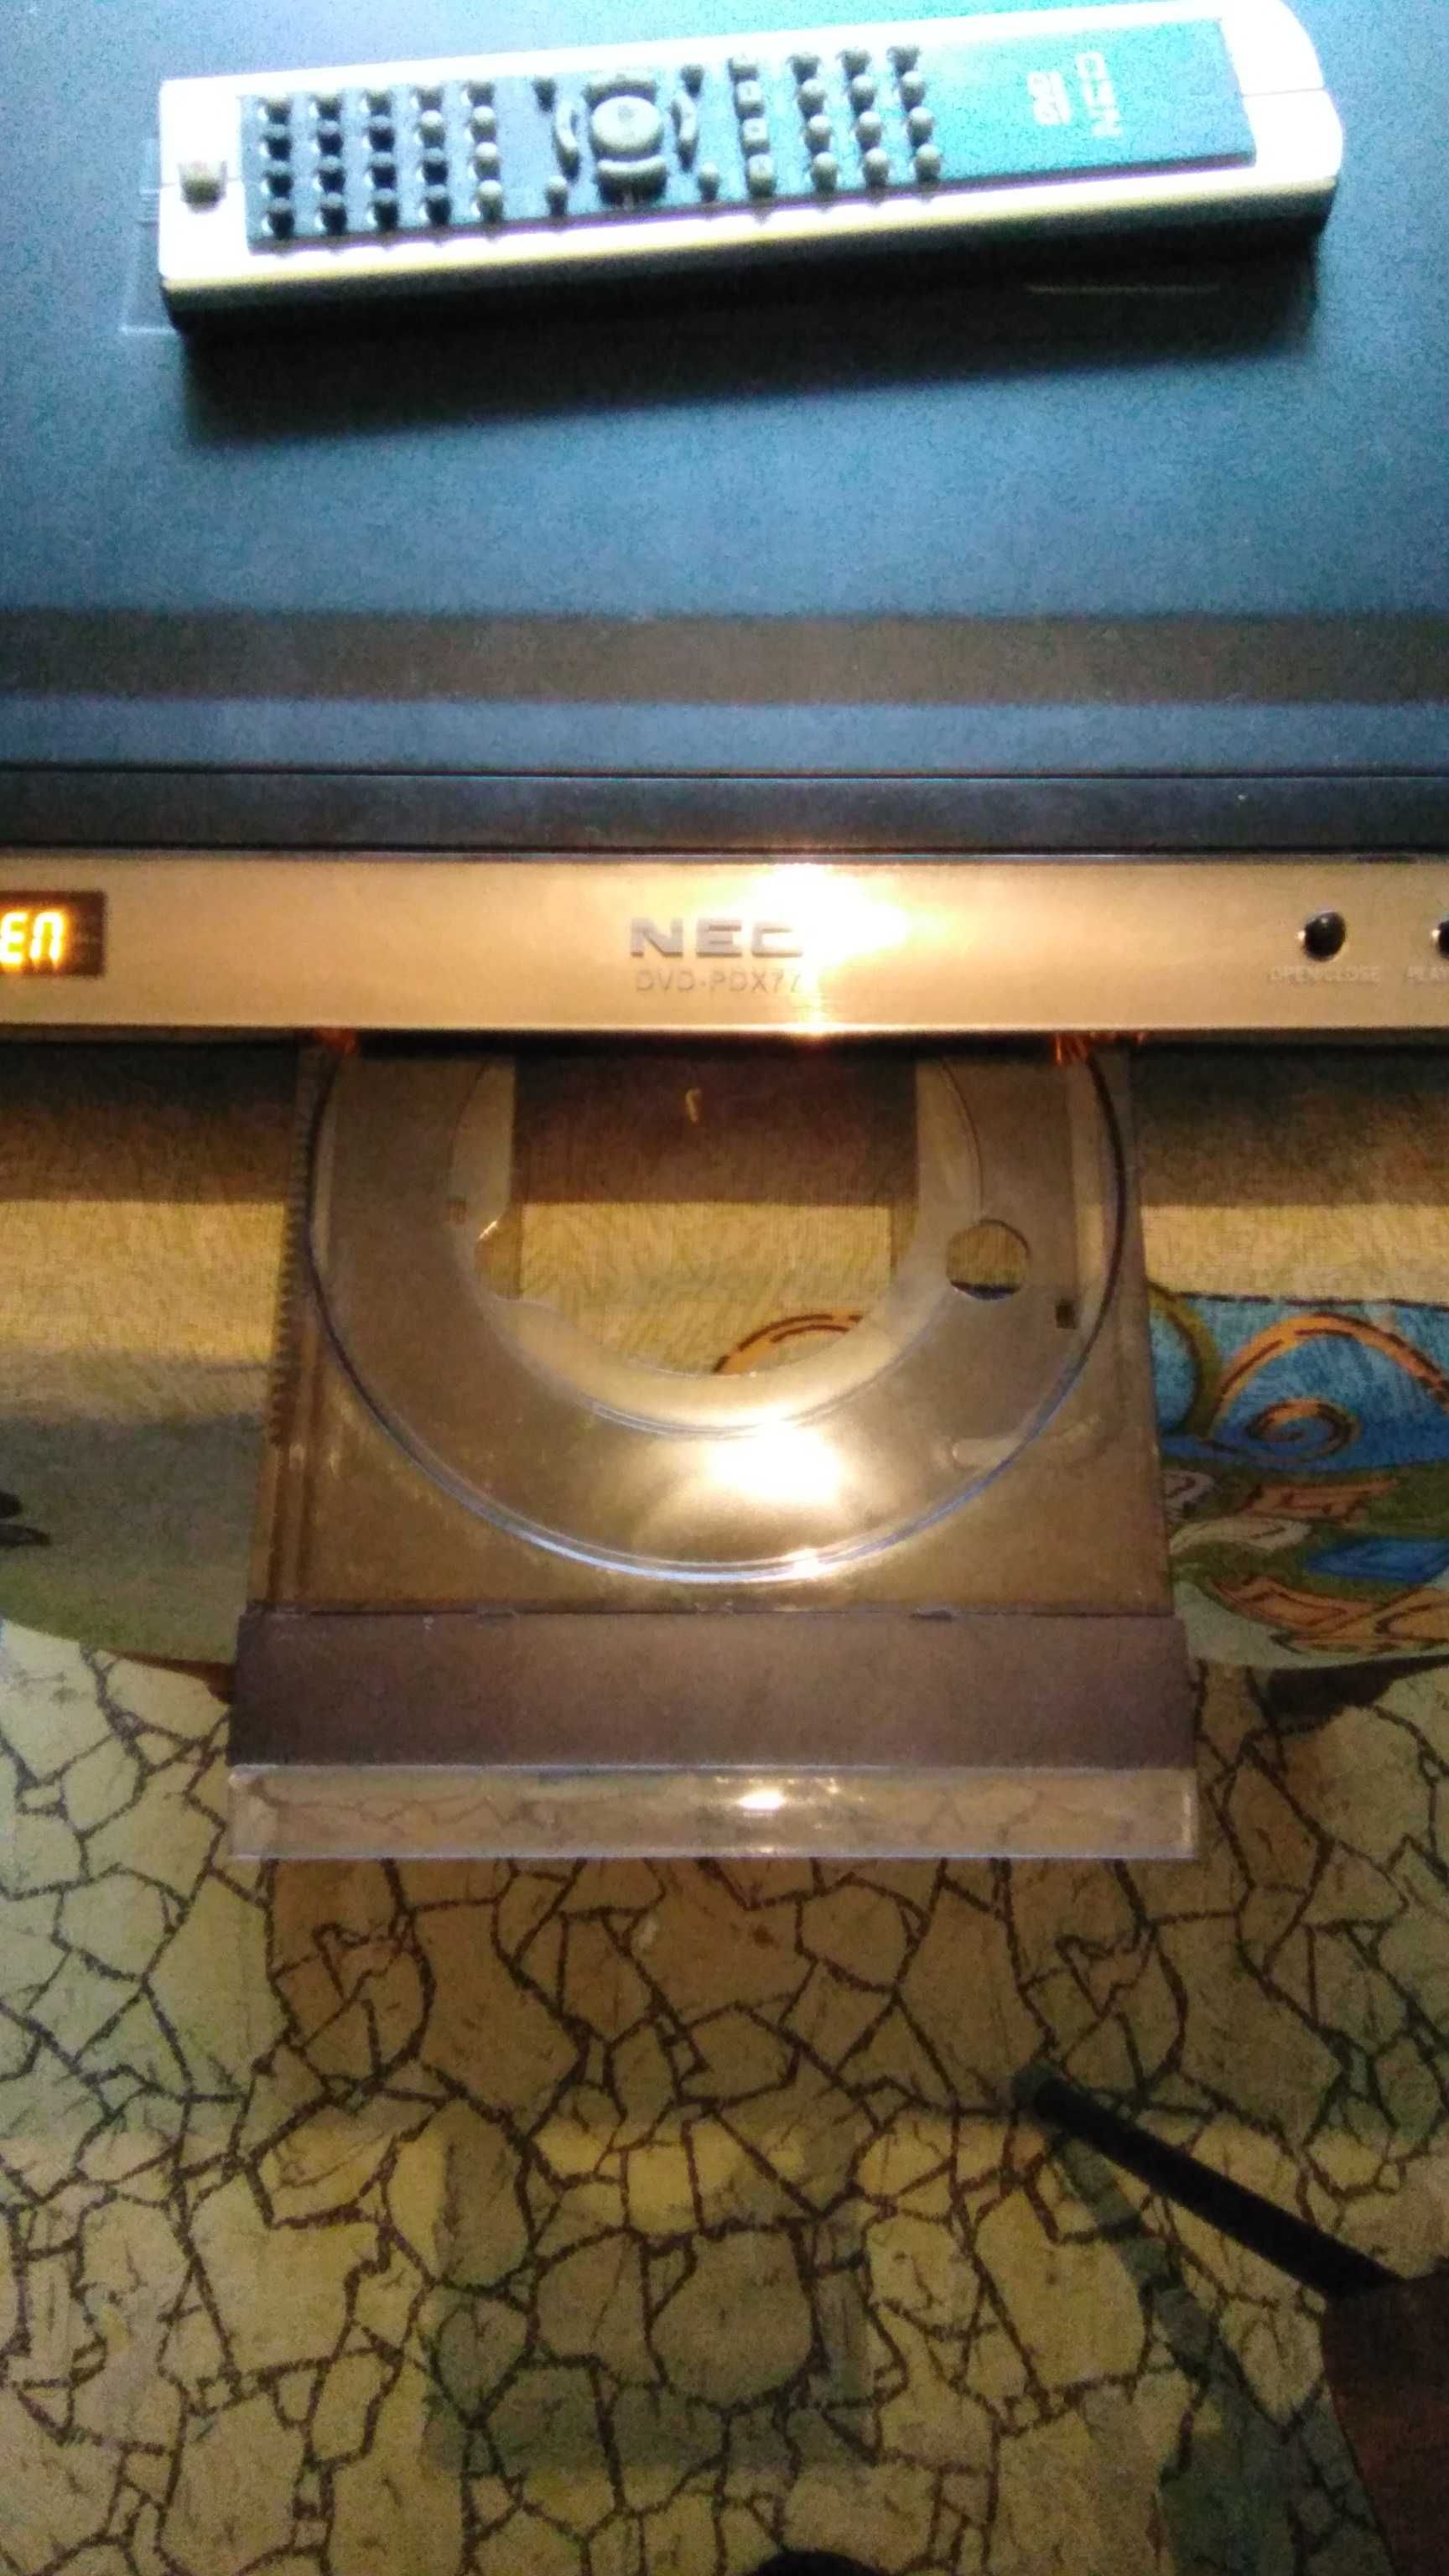 DVD neo PDX77 player